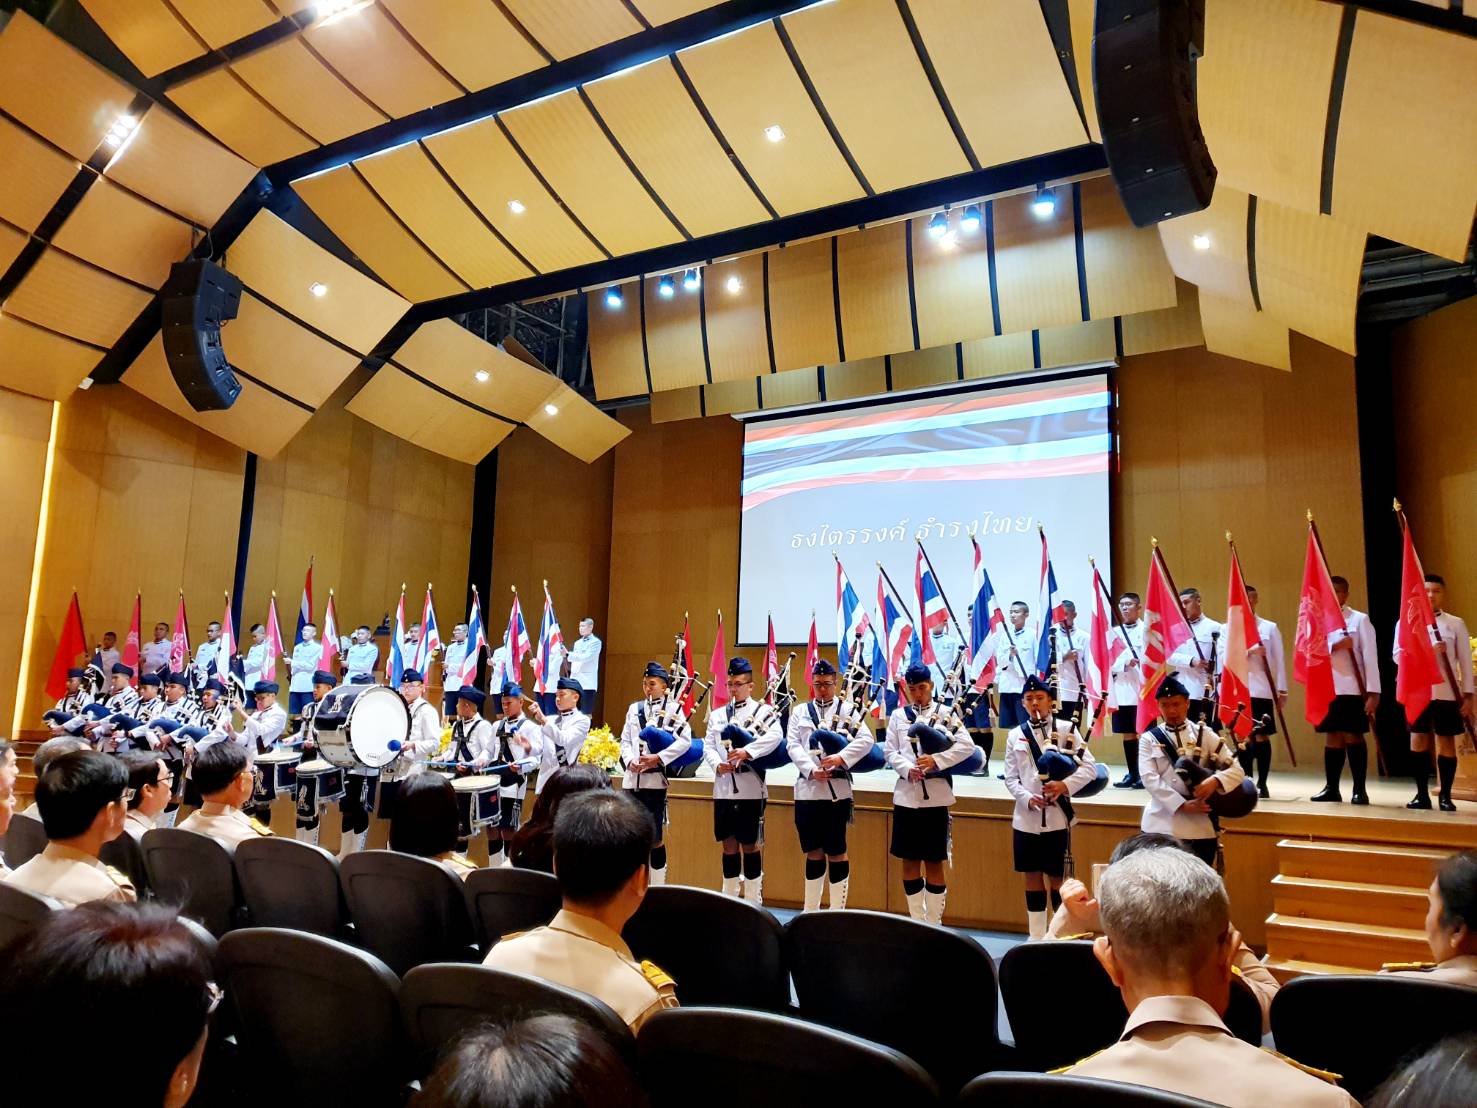 ผู้อำนวยการสำนักบริหารงานกลาง และผู้อำนวยการสำนักประชาสัมพันธ์ ตัวแทนสำนักงานเลขาธิการวุฒิสภา เข้าร่วมพิธีเปิดนิทรรศการธงชาติไทย 